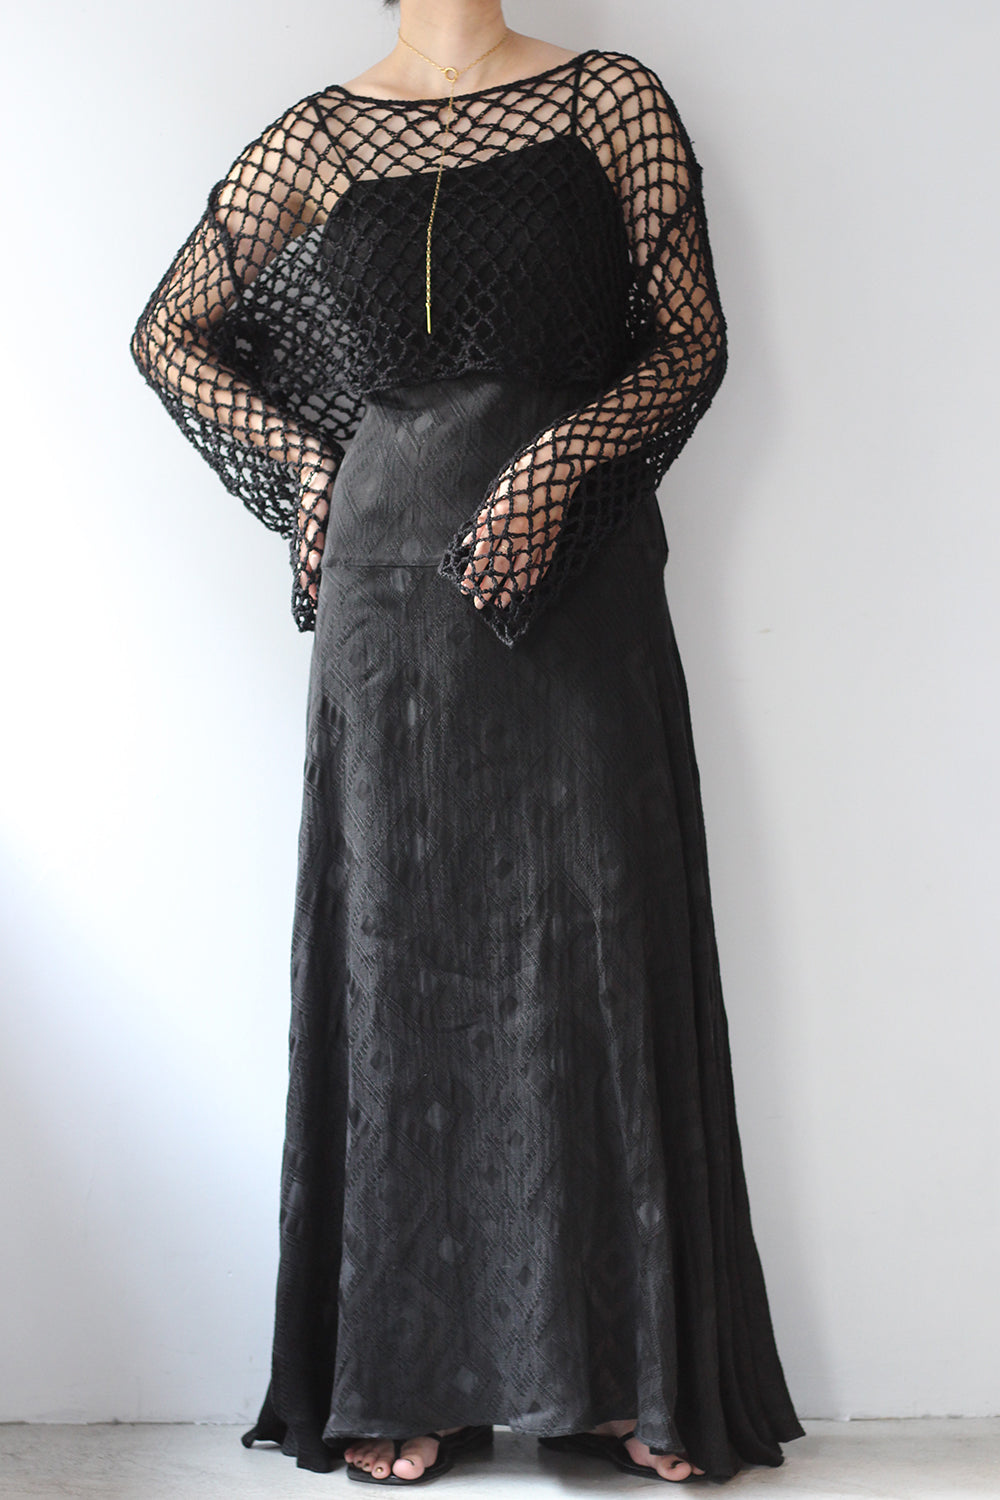 ERiKO KATORi "gisha jacquard dress" (black)